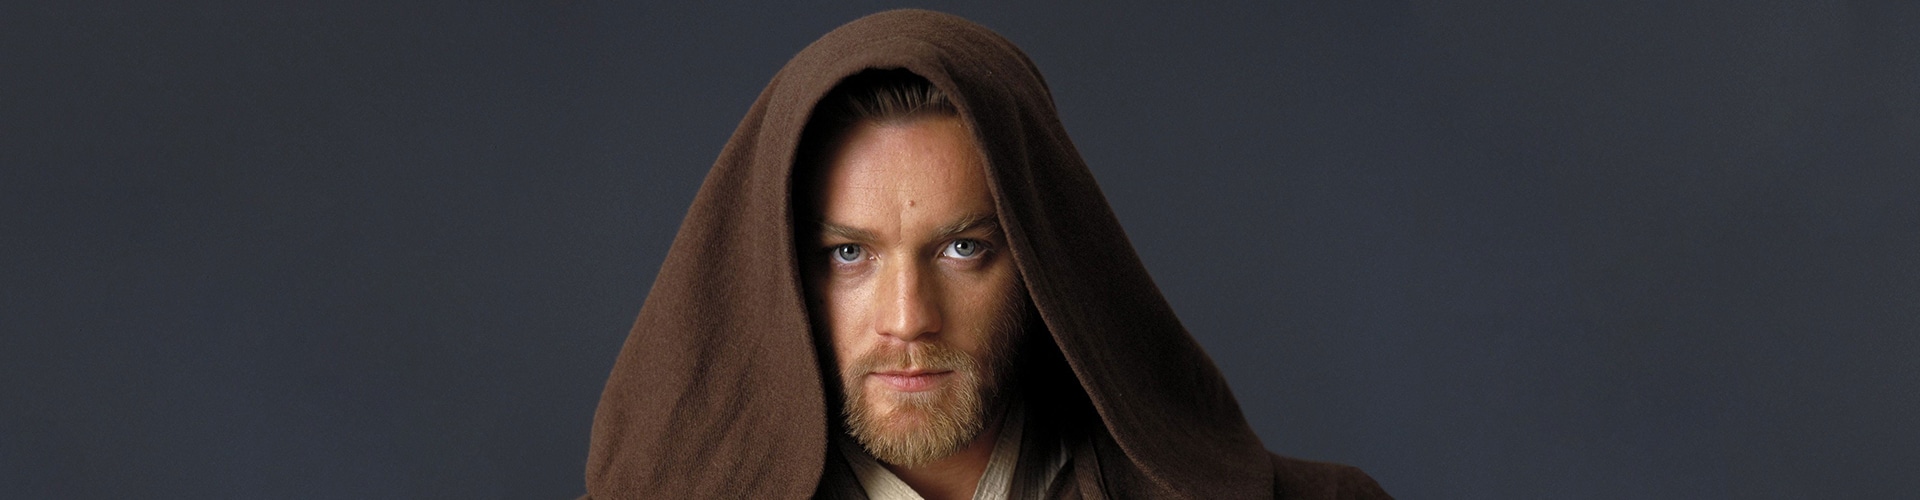 Obi-Wan Kenobi, le diplomate voyageur